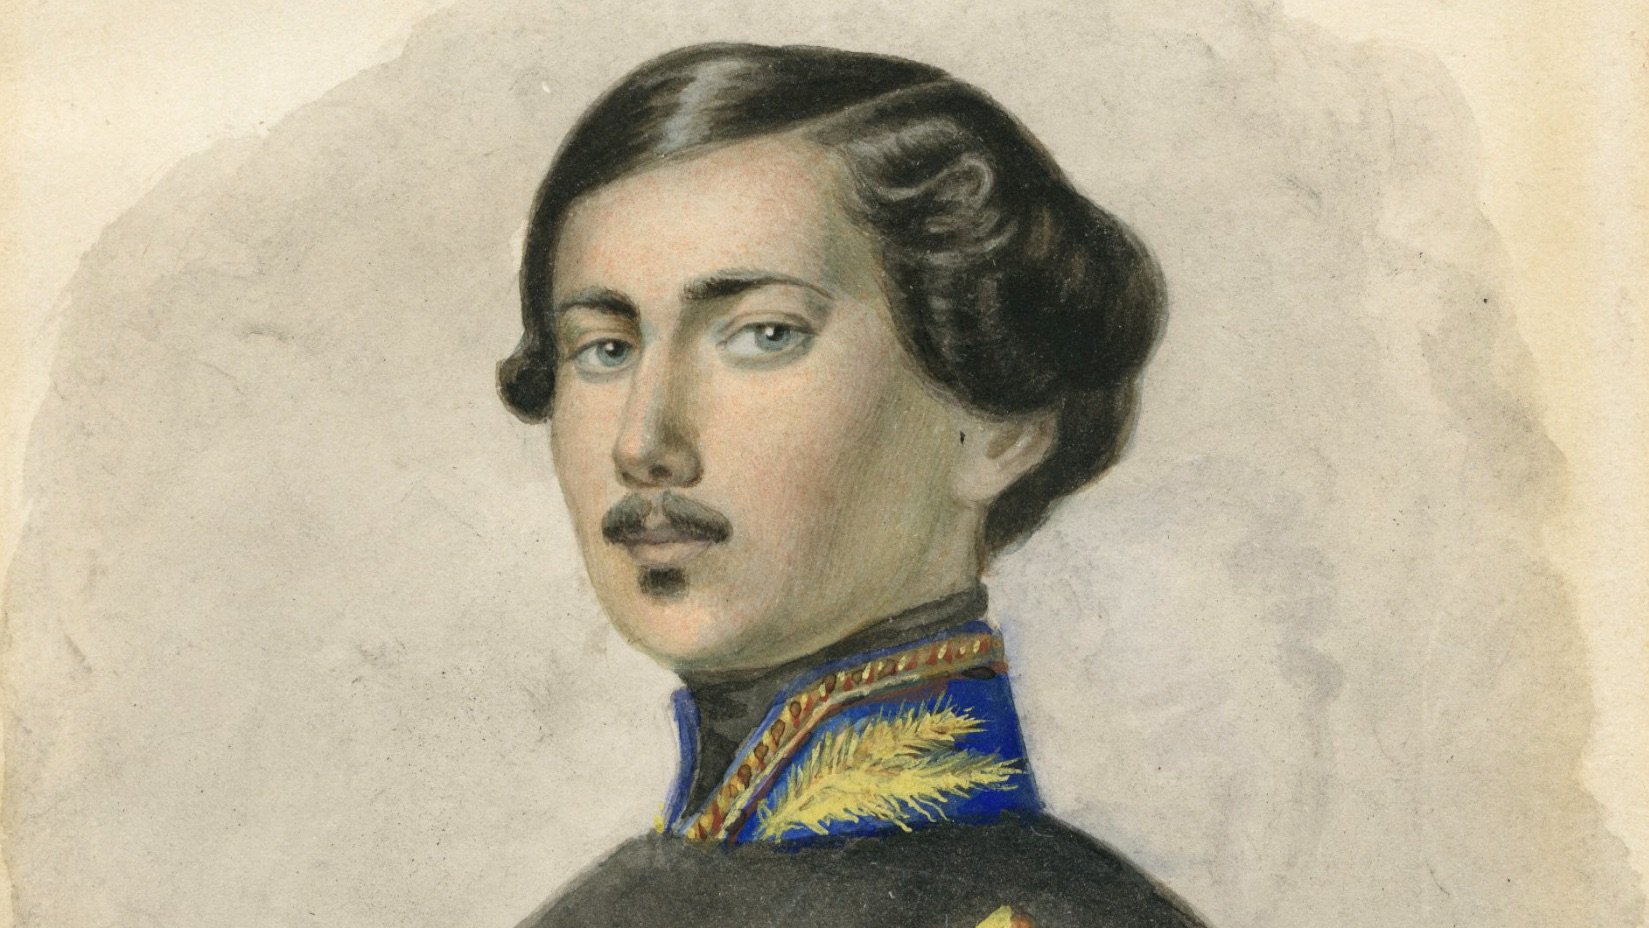   Peter Robert Berry I als junger Lieutenant während des Sonderbundskriegs 1847  